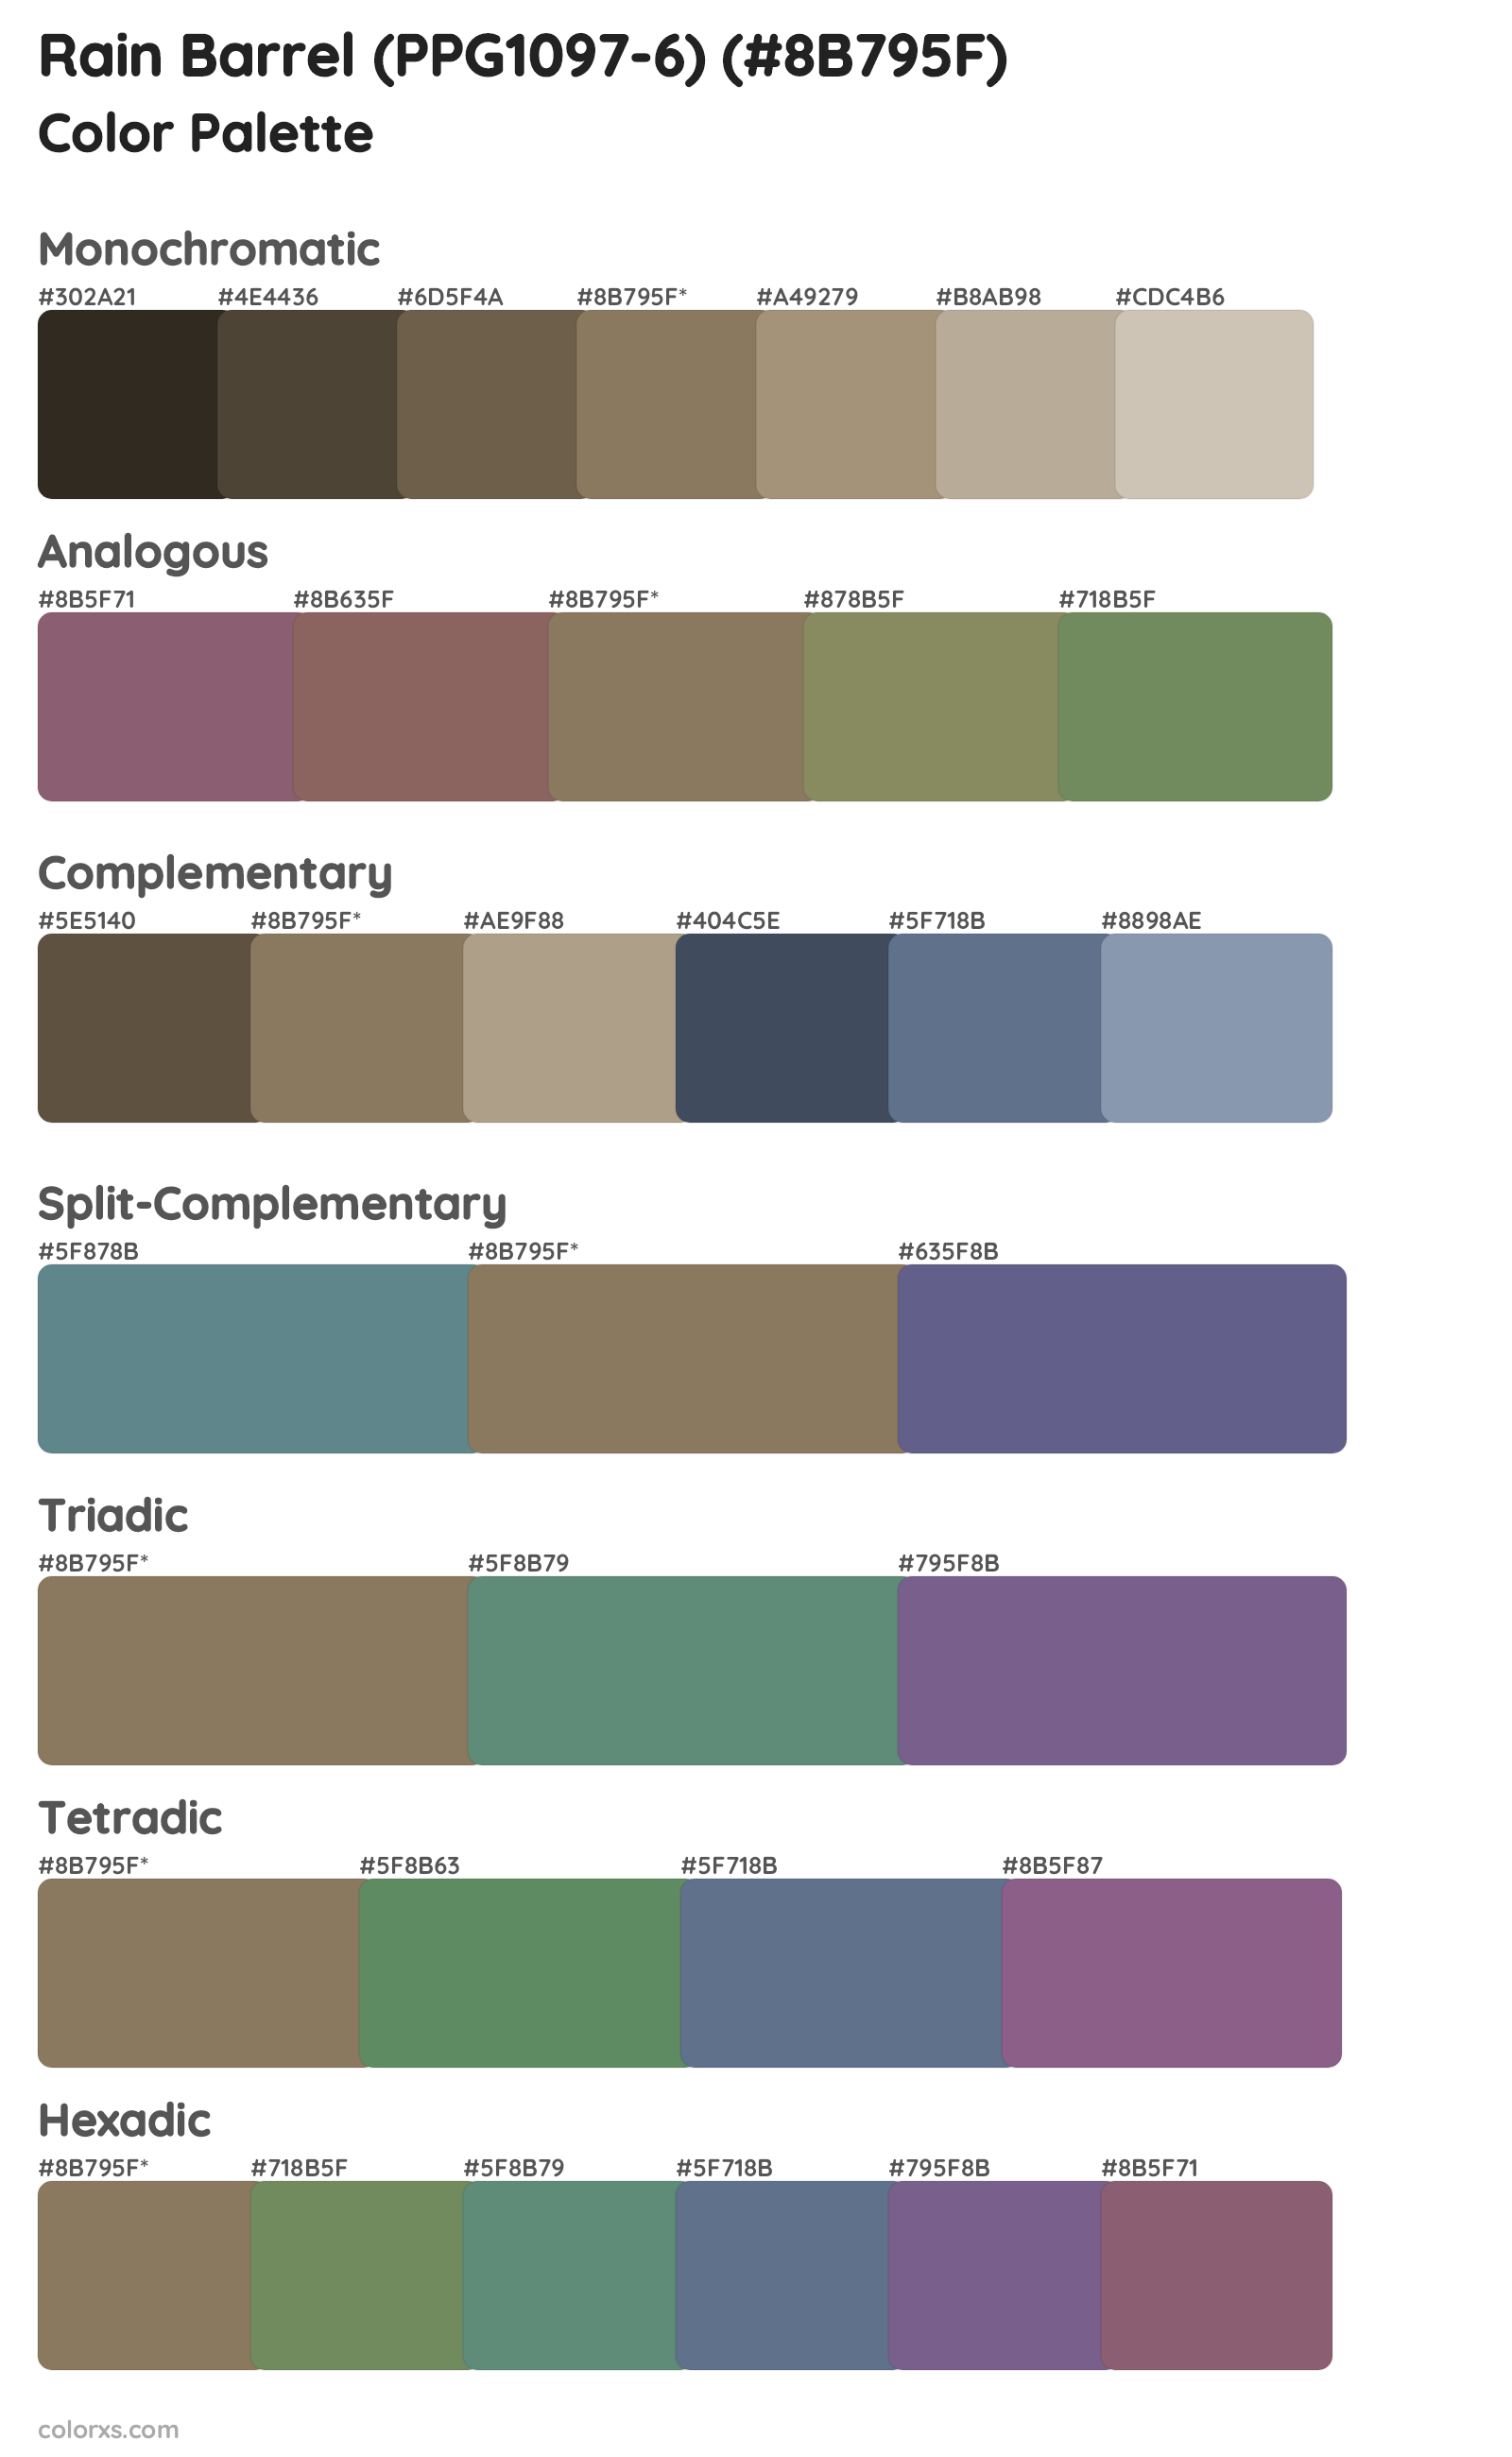 Rain Barrel (PPG1097-6) Color Scheme Palettes